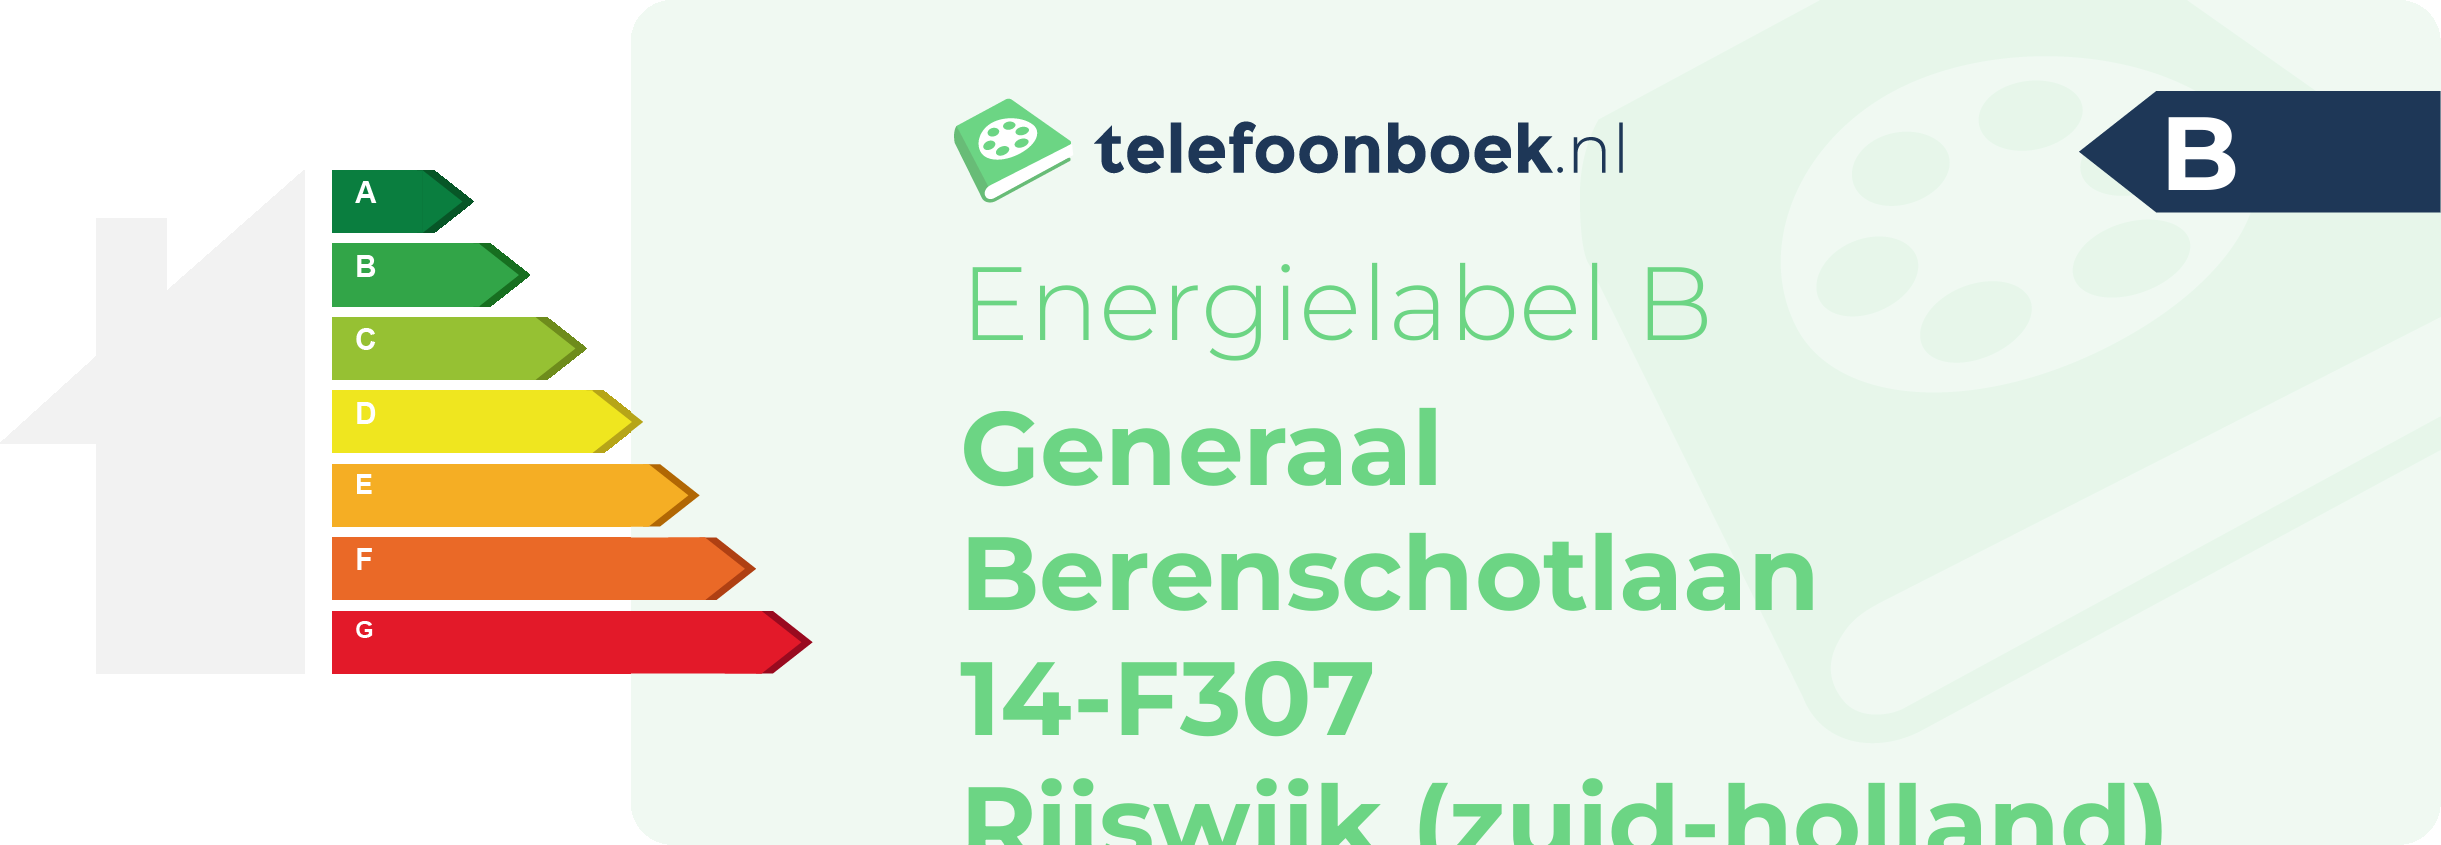 Energielabel Generaal Berenschotlaan 14-F307 Rijswijk (Zuid-Holland)